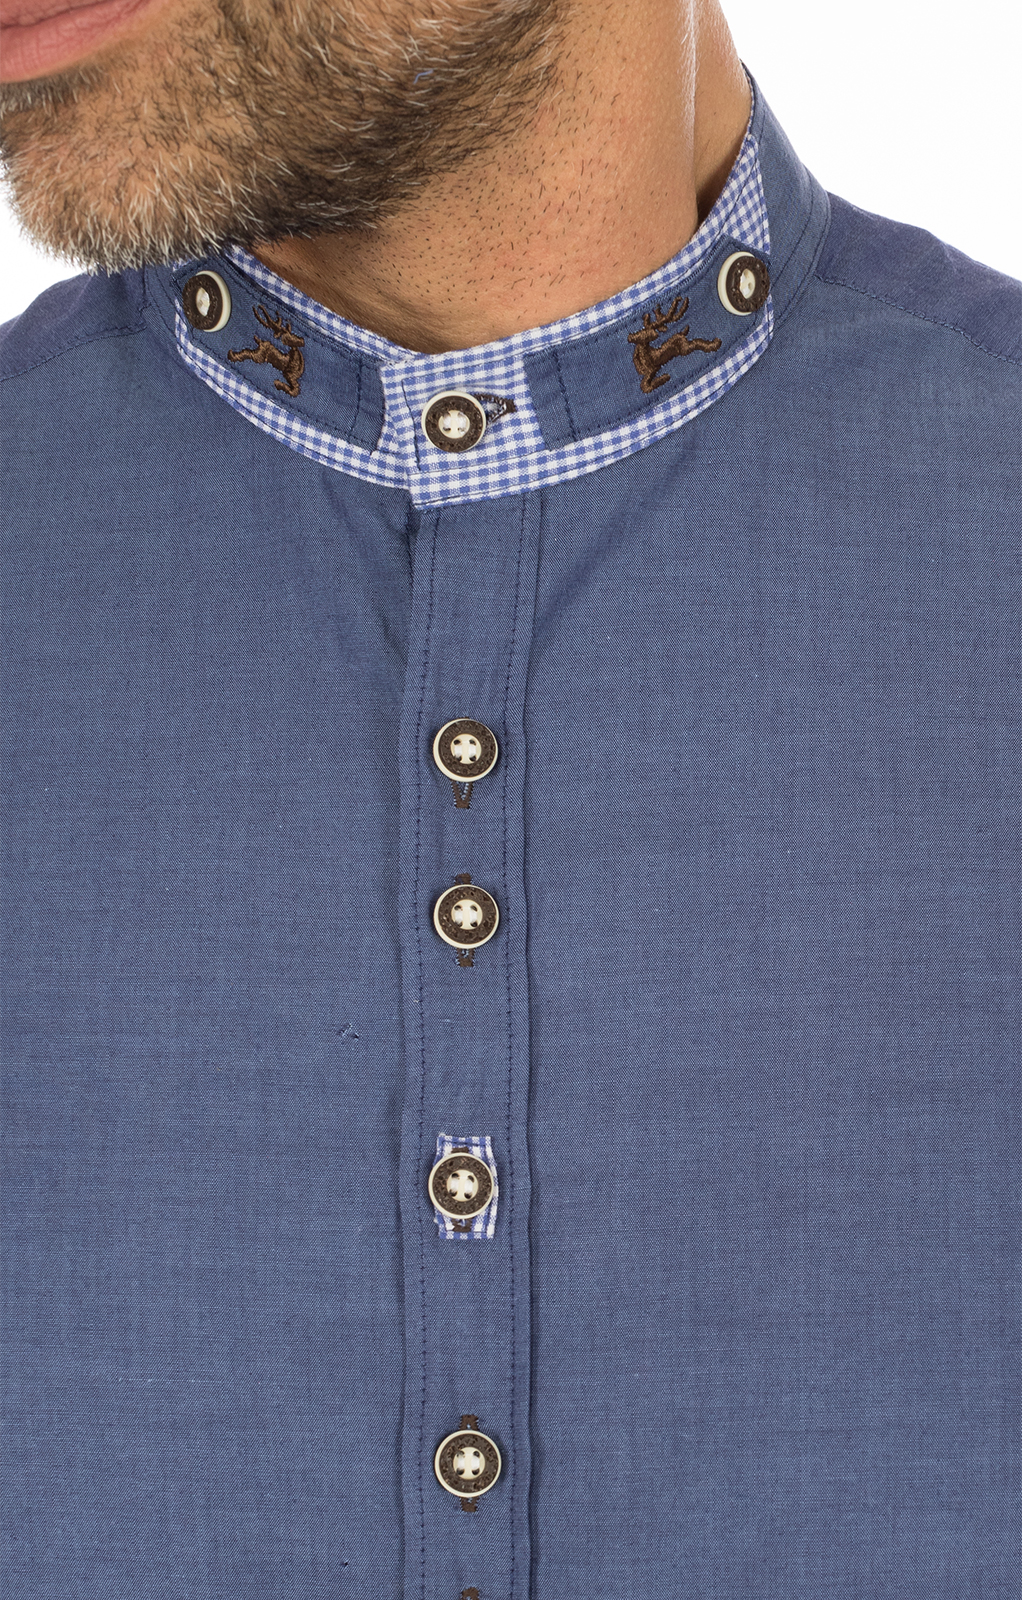 weitere Bilder von German traditional shirt Pfoad blue